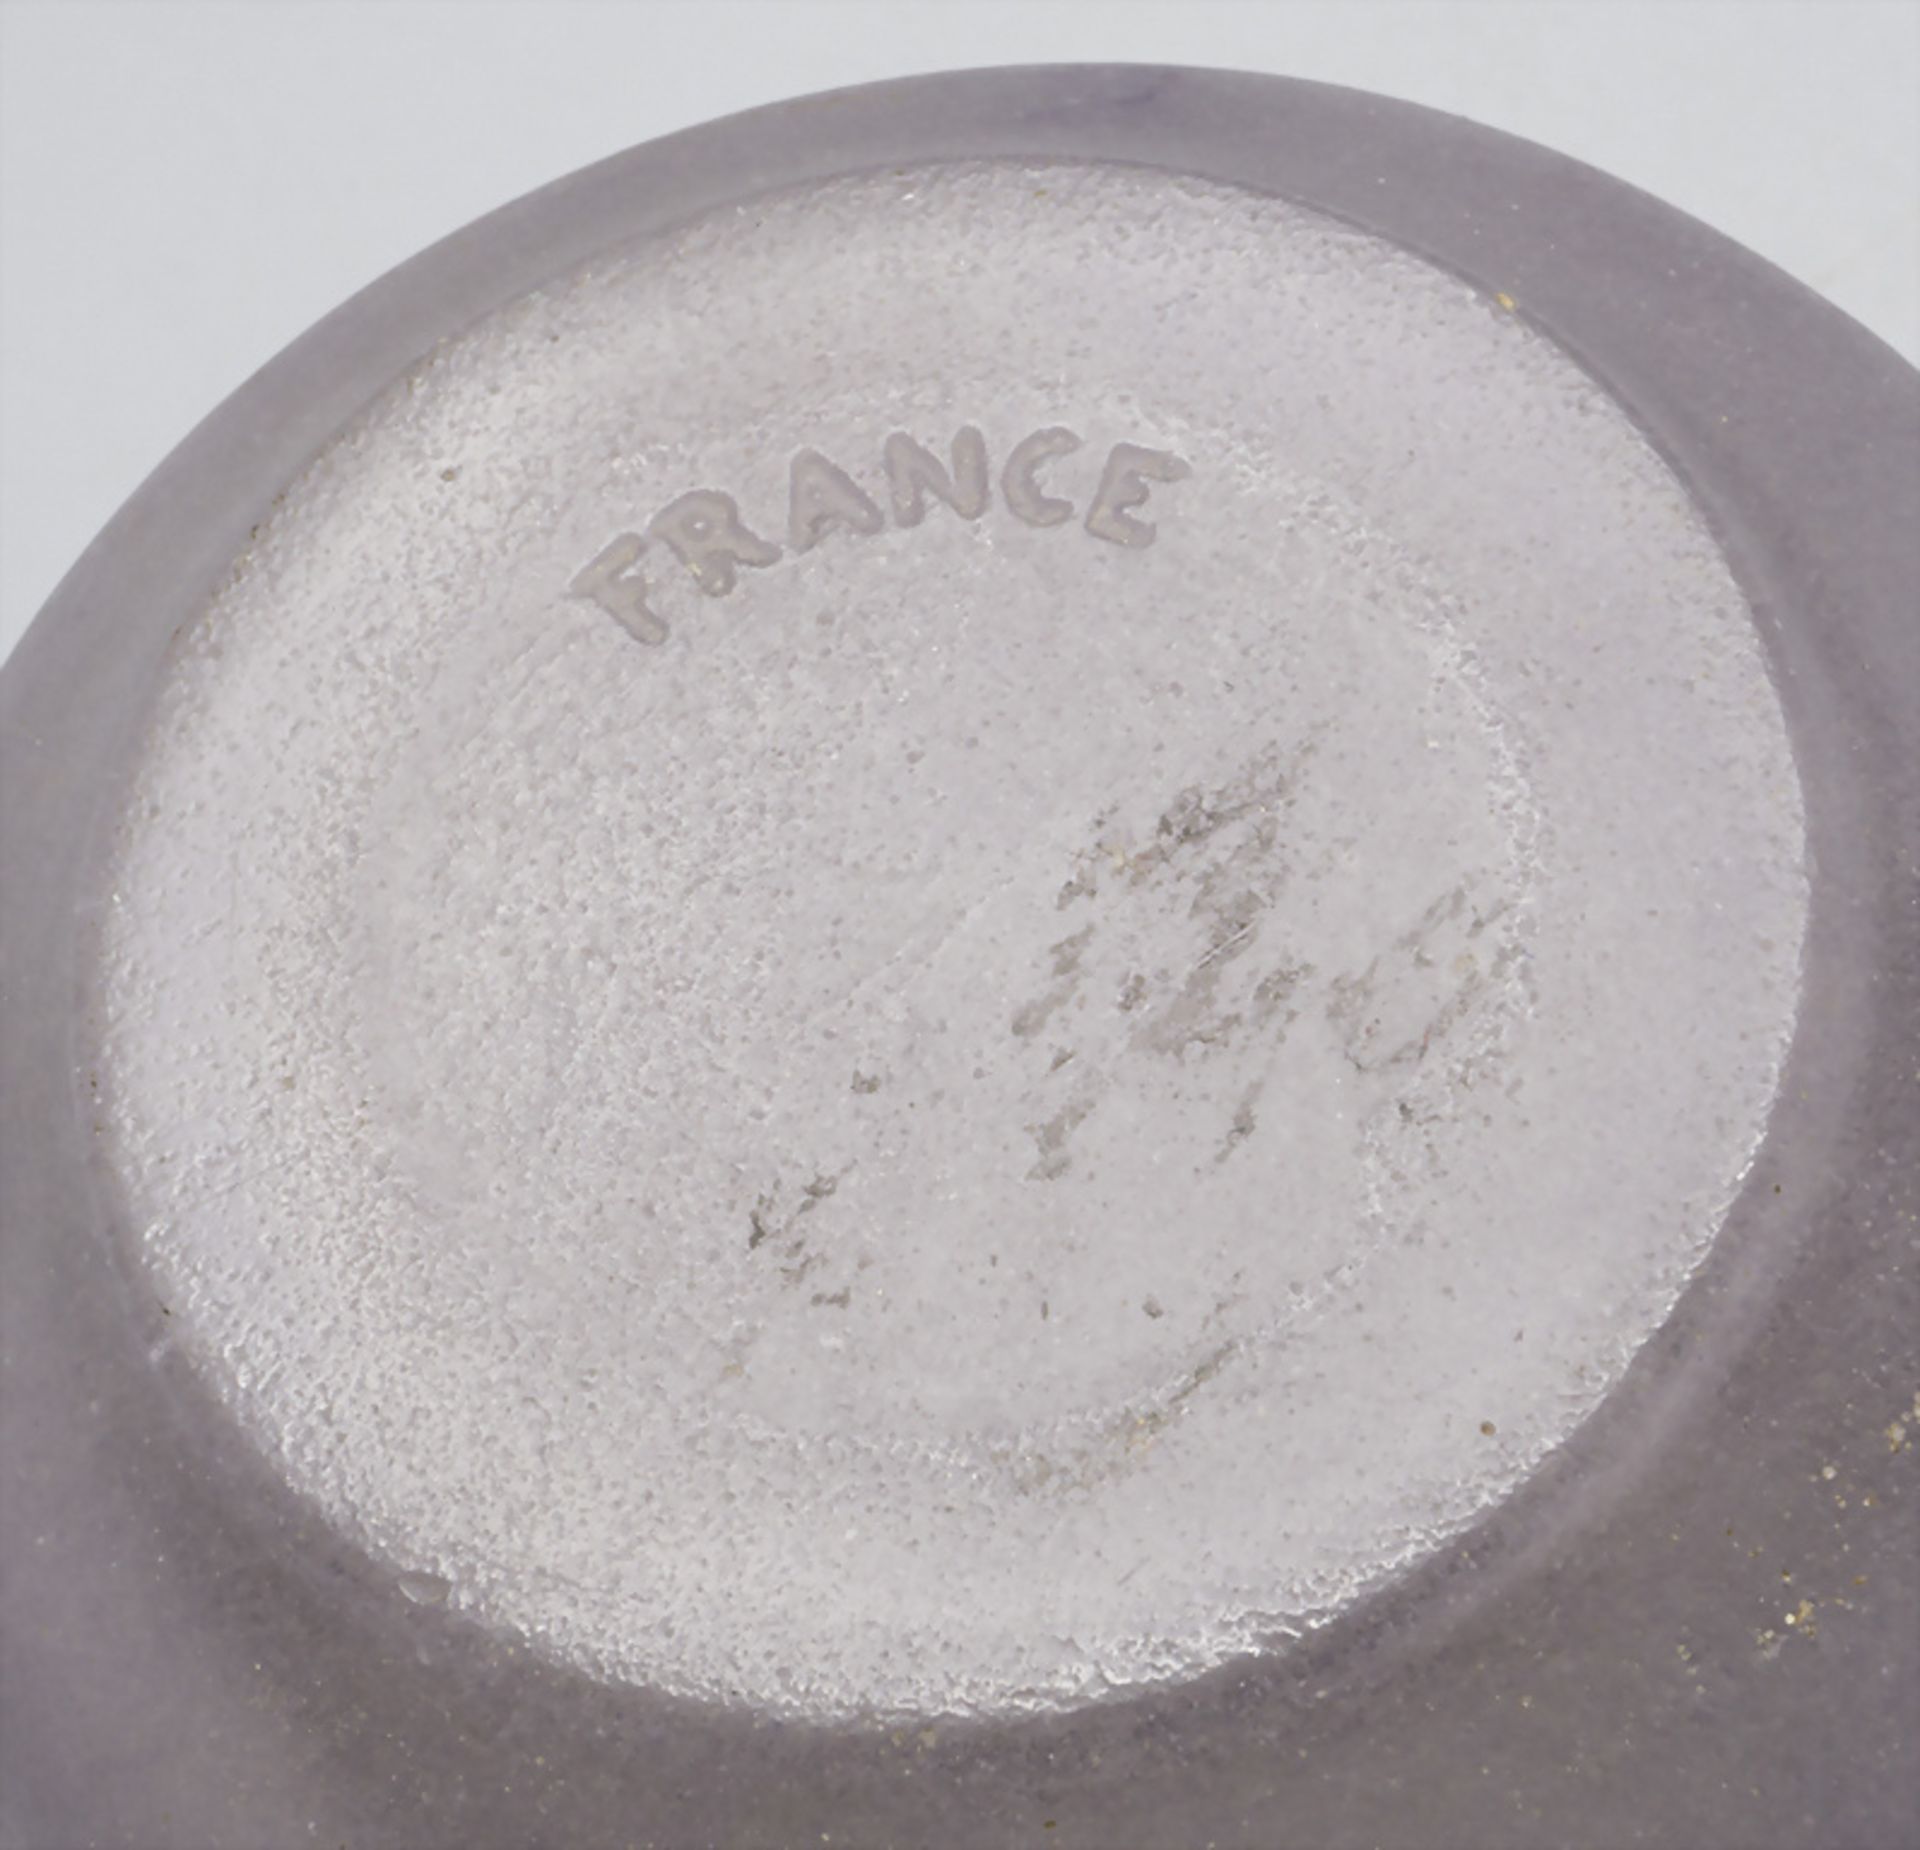 Jugendstil Schale 'Lierre' / Art Déco glass bowl 'Ivy', Gabriel Argy-Rousseau, Paris, 1919 - Image 6 of 6